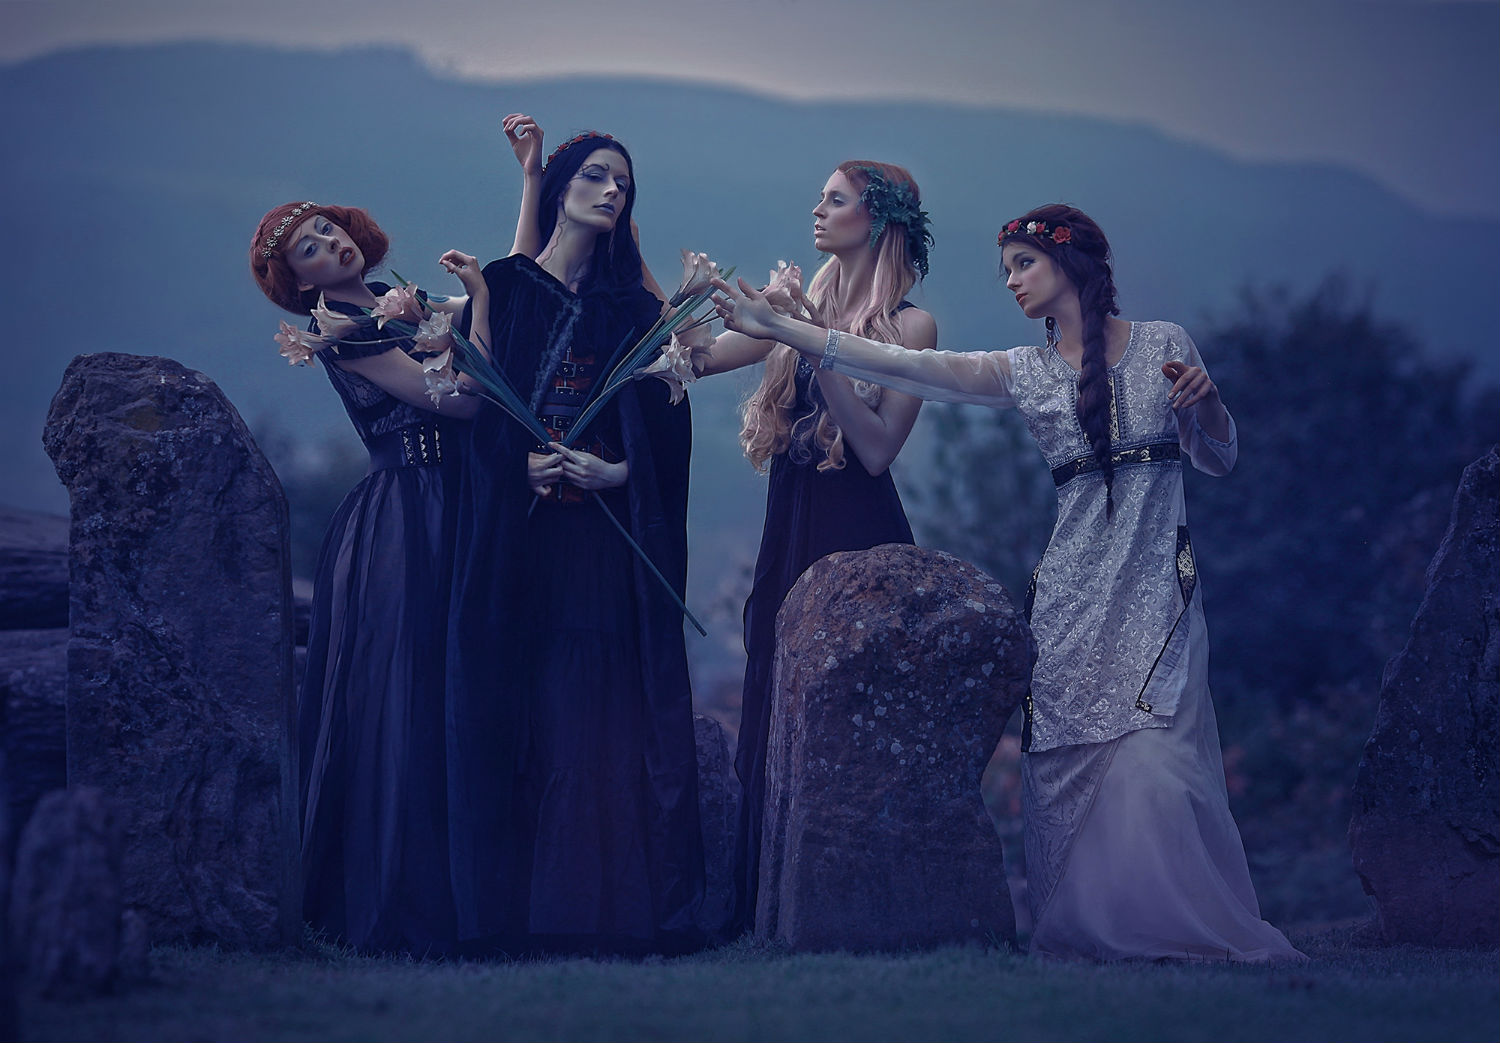 Agnieszka Lorek fashion photography gothic halloween witches pagan